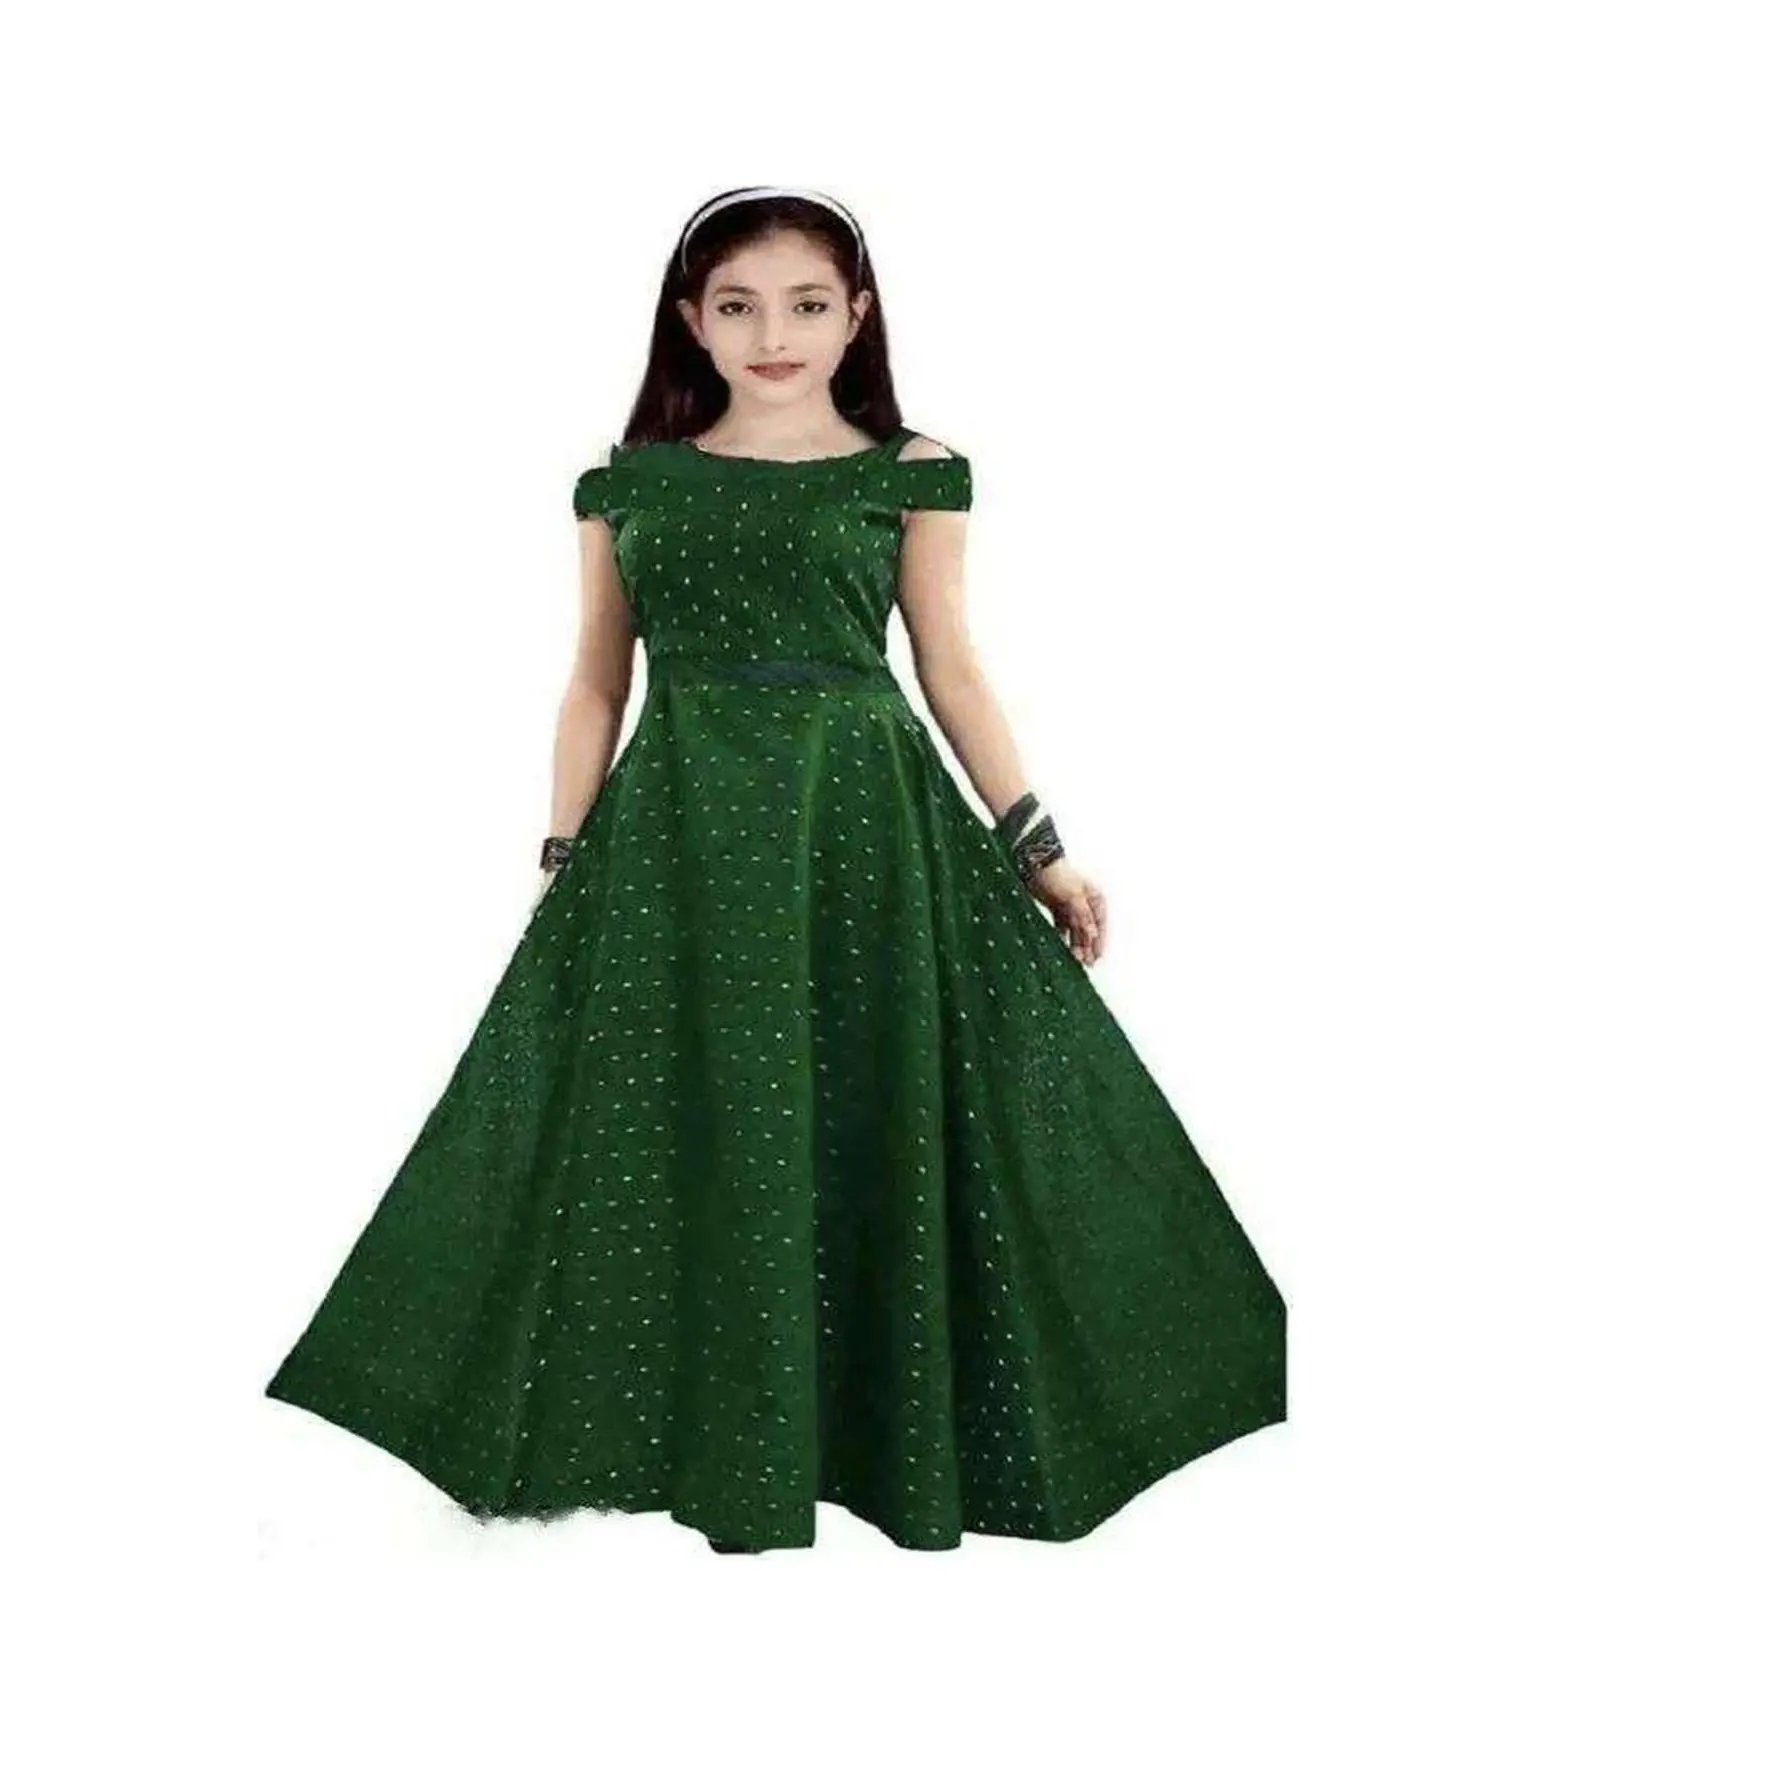 Gaun Taffeta spesial untuk anak perempuan, Gaun kerja modis dengan konsep kerja kancing Jacquard untuk anak perempuan